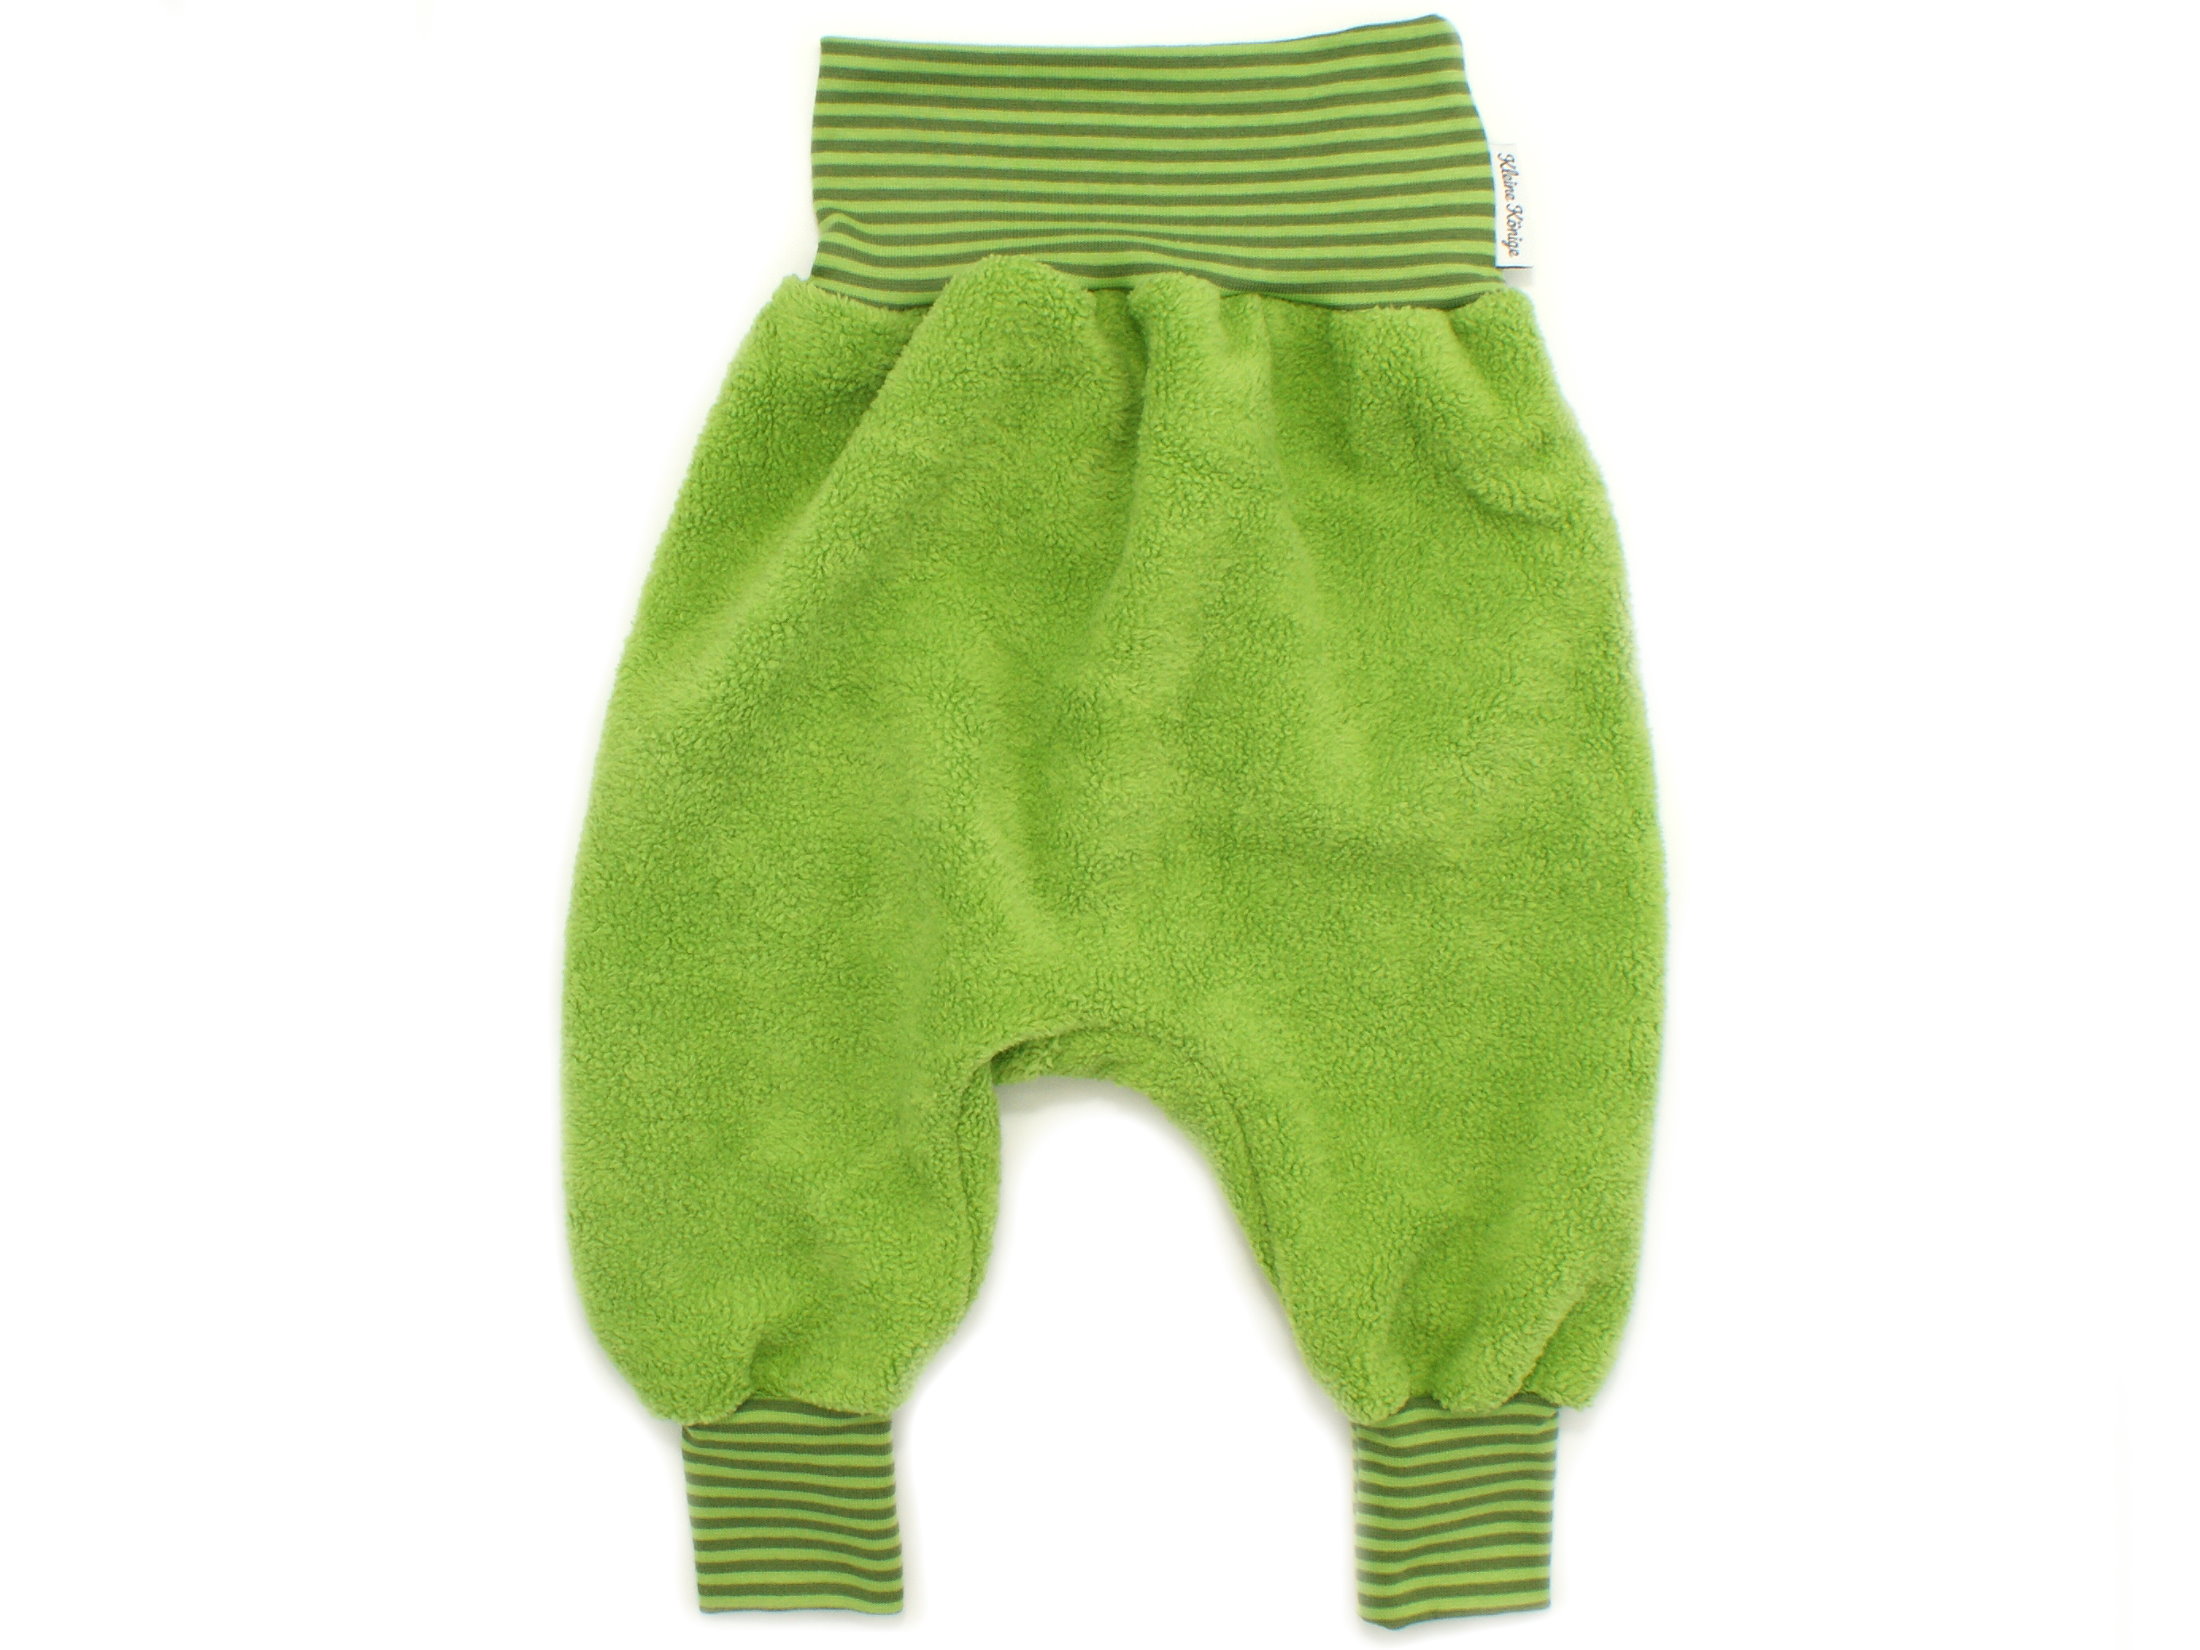 Kinder Fleece Pumphose Sweathose grün Streifen